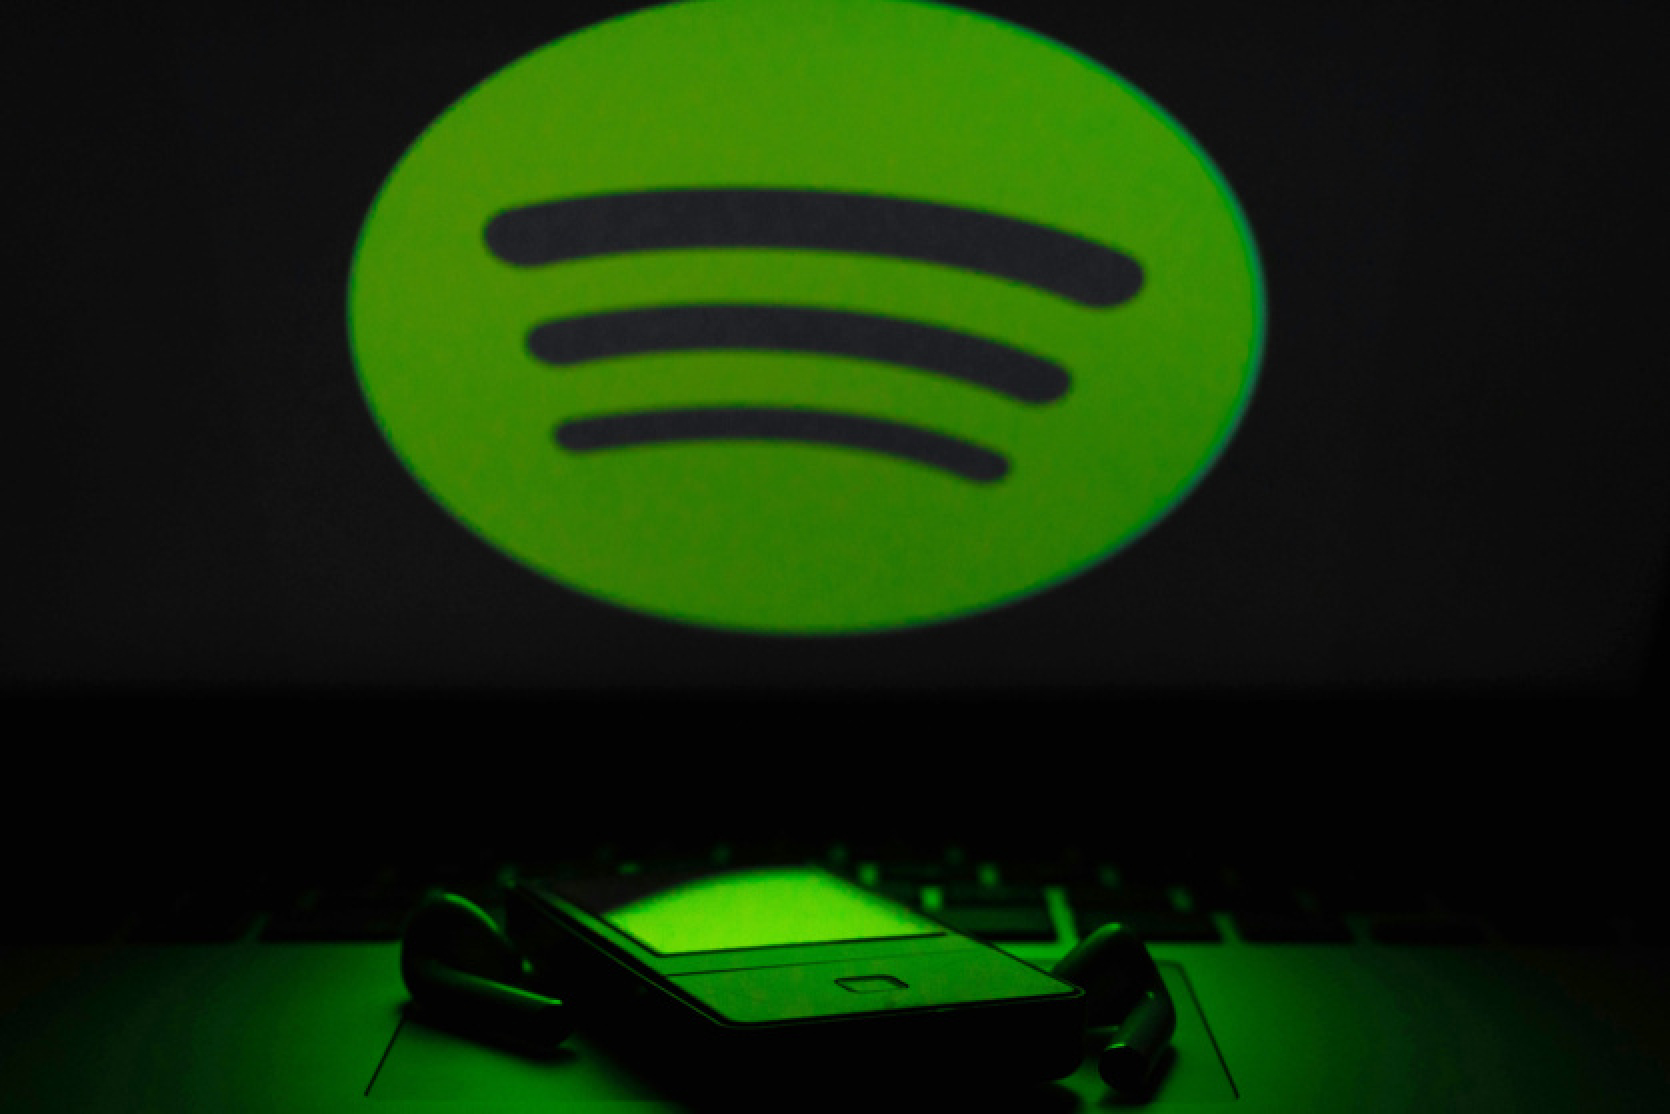 Spotify būs bezzaudējumu audio: lietotnes kodā ir minēts bezzaudējumu audio jaunajā Music Pro funkcijā